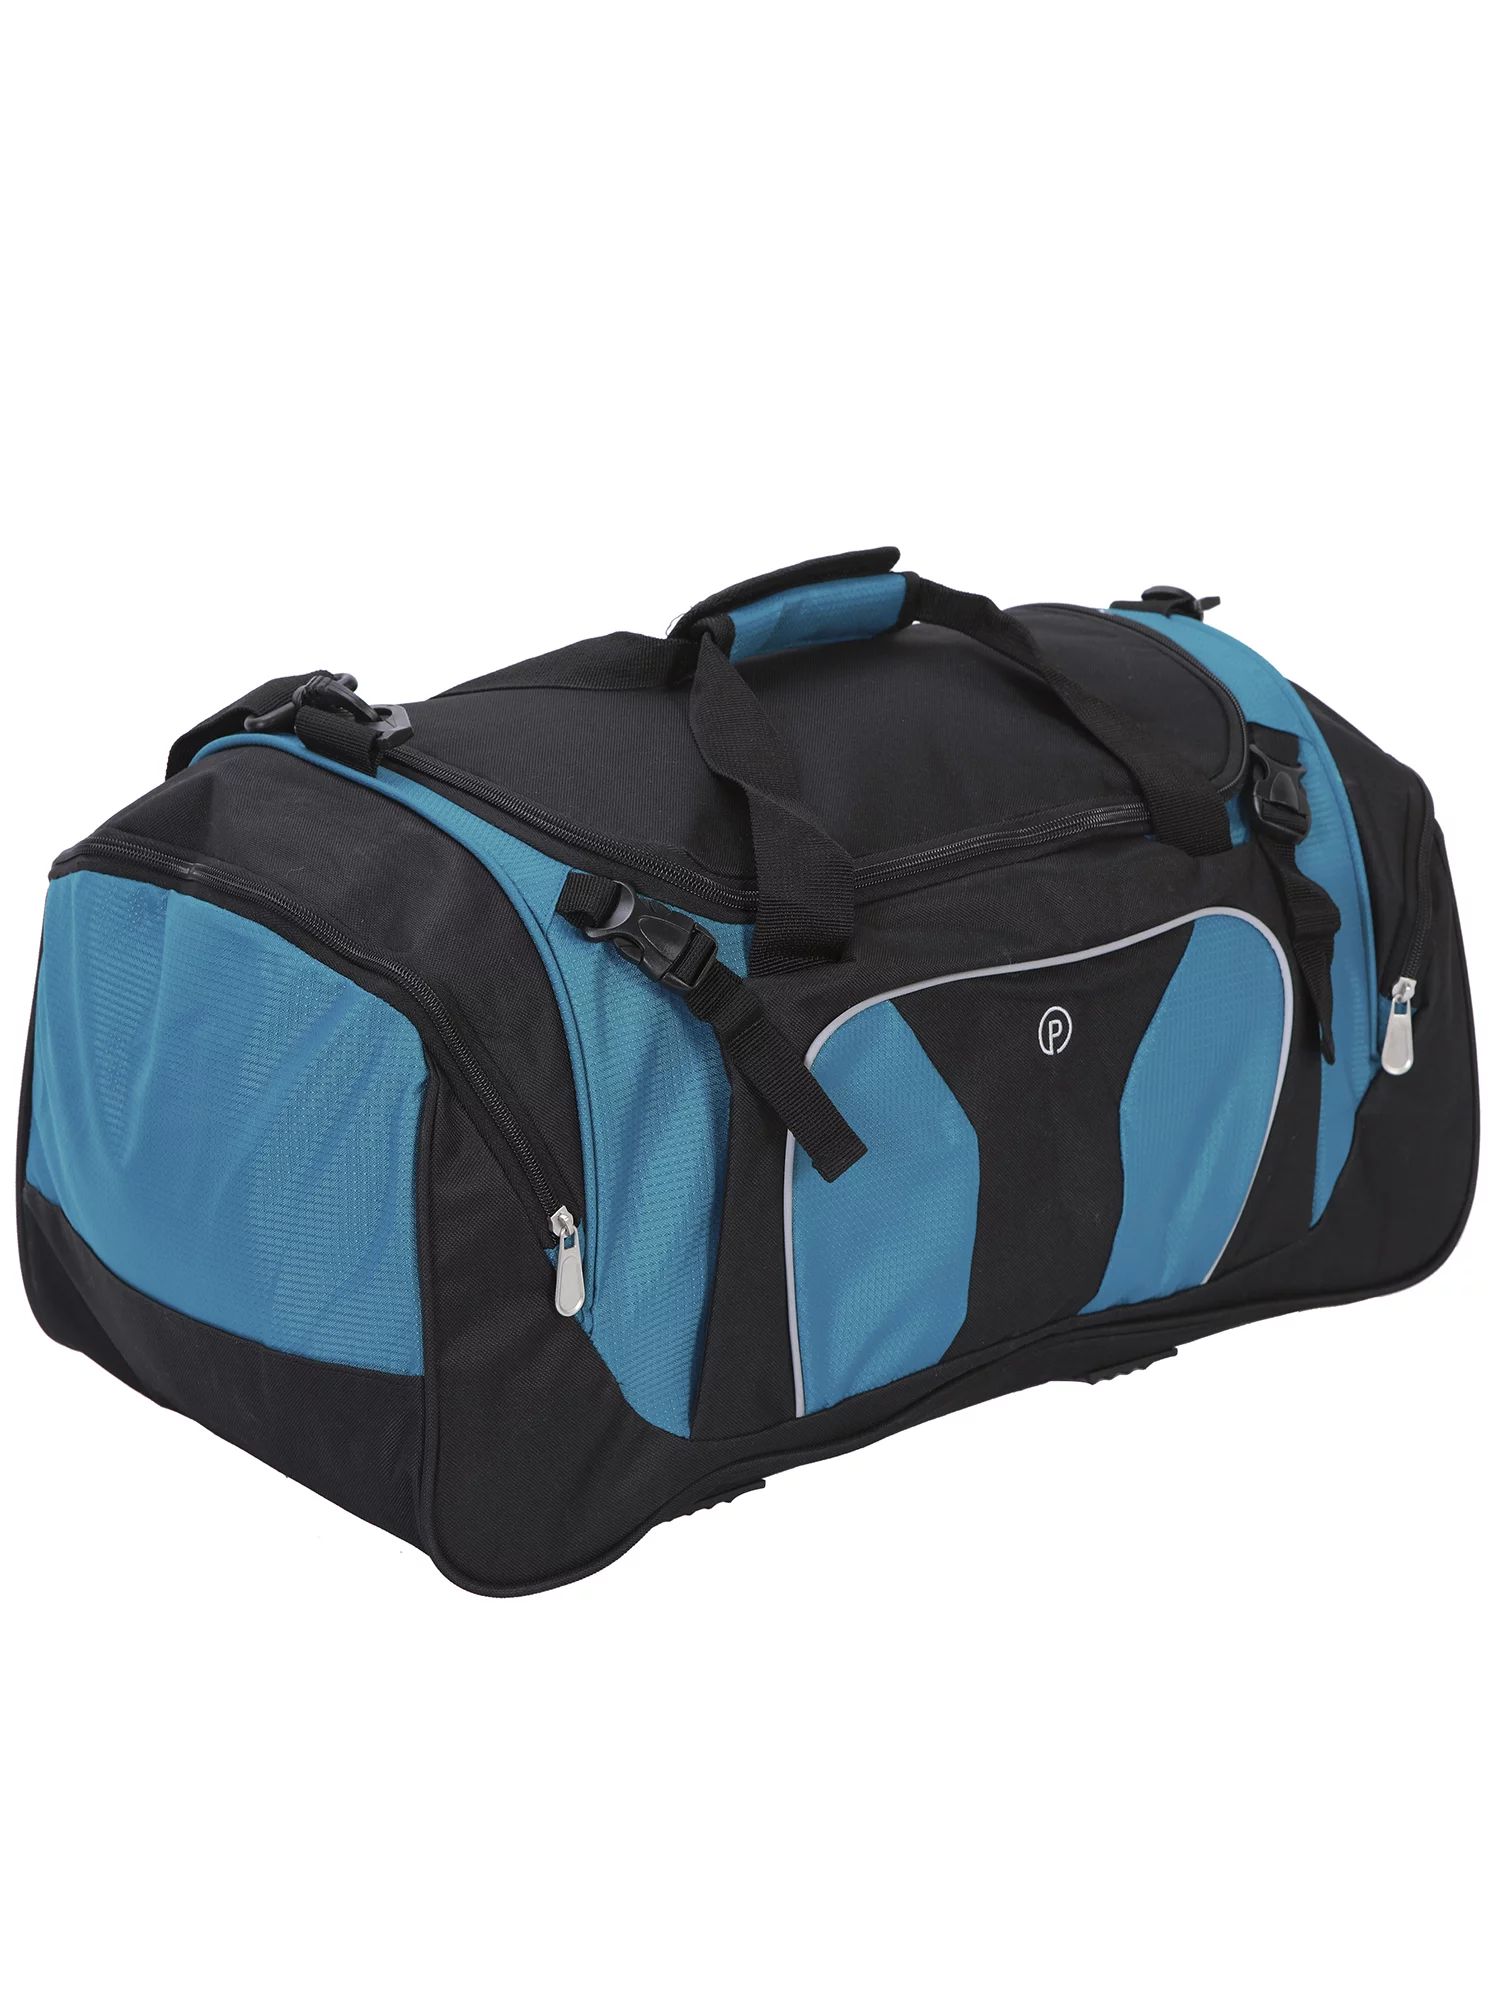 Protege 22" Sport Duffel Bag, Aqua/Black | Walmart (US)